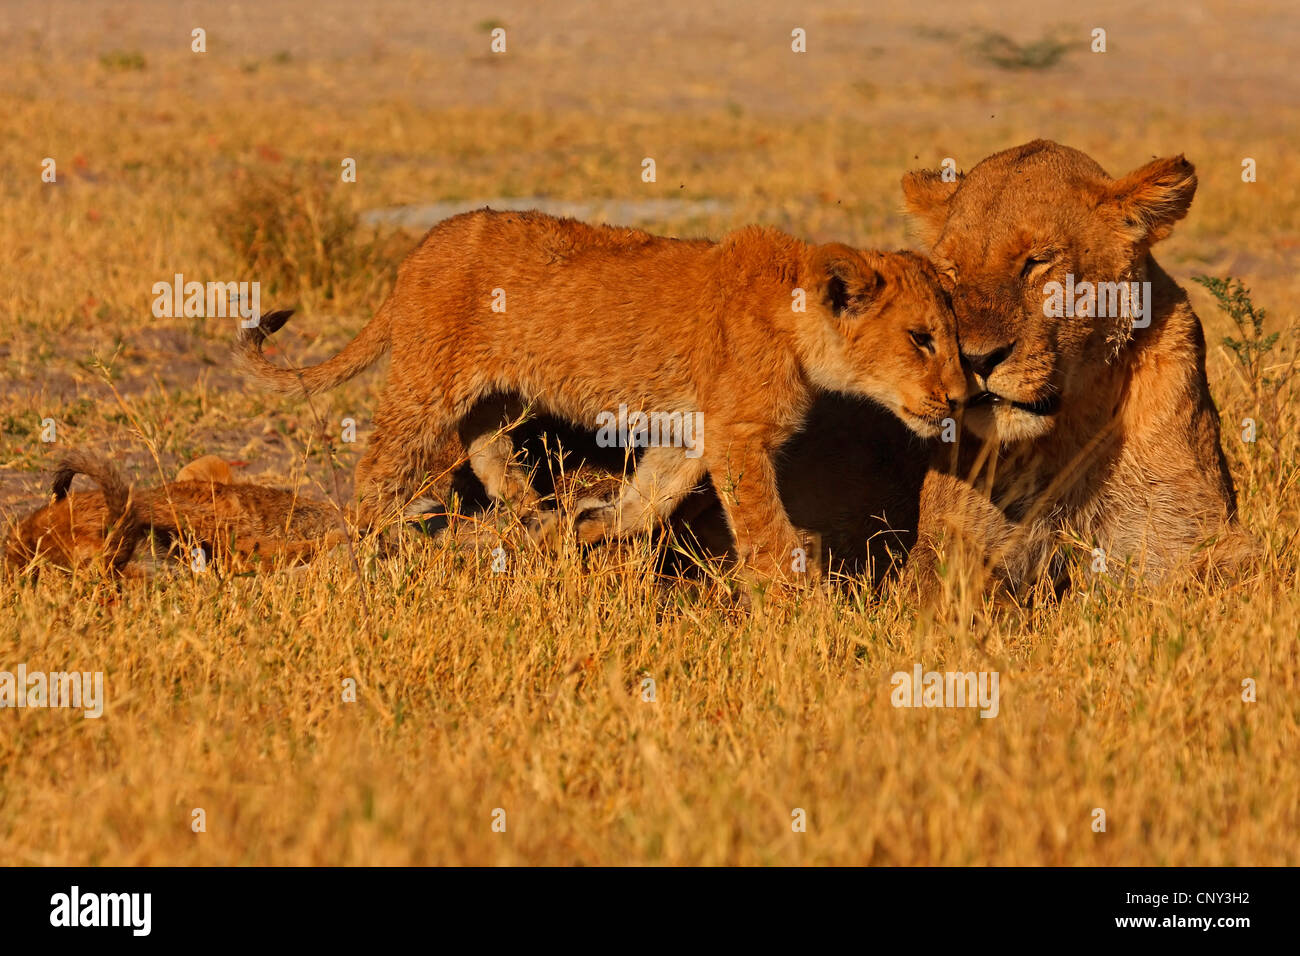 Lion (Panthera leo), Lionne &AMP ; d'oursons, Botswana, Chobe National Park Banque D'Images